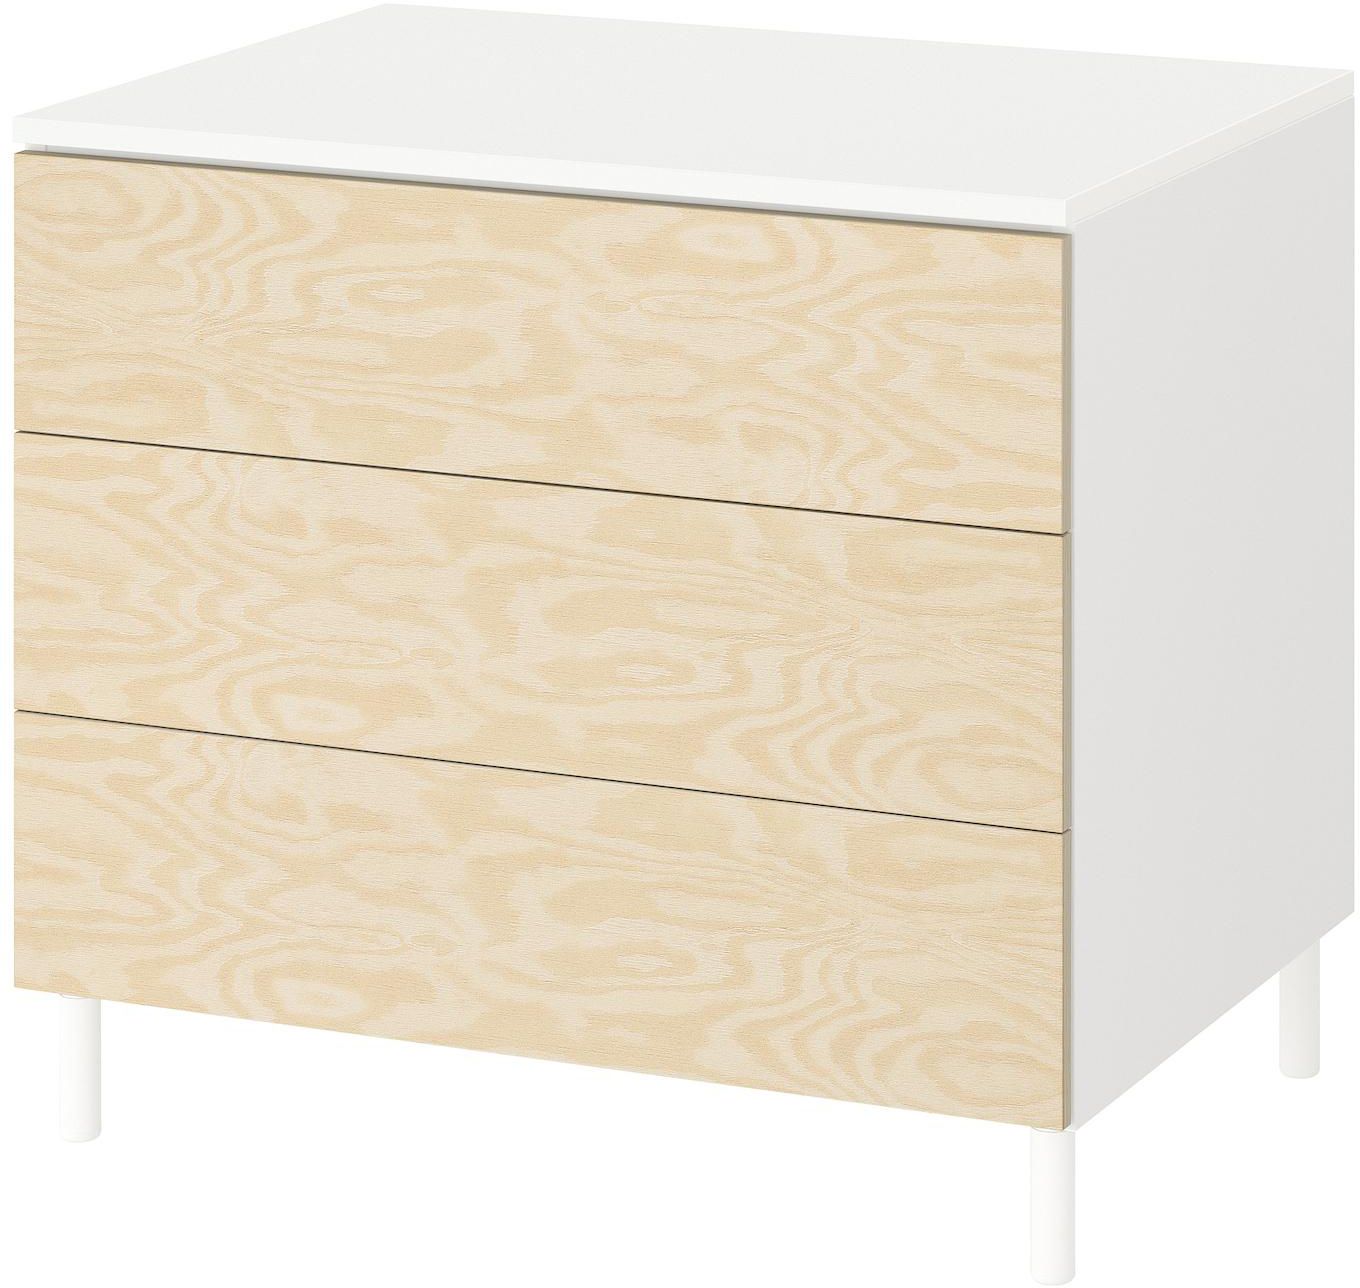 PLATSA Chest of 3 drawers - white/Kalbåden lively pine effect 80x57x73 cm